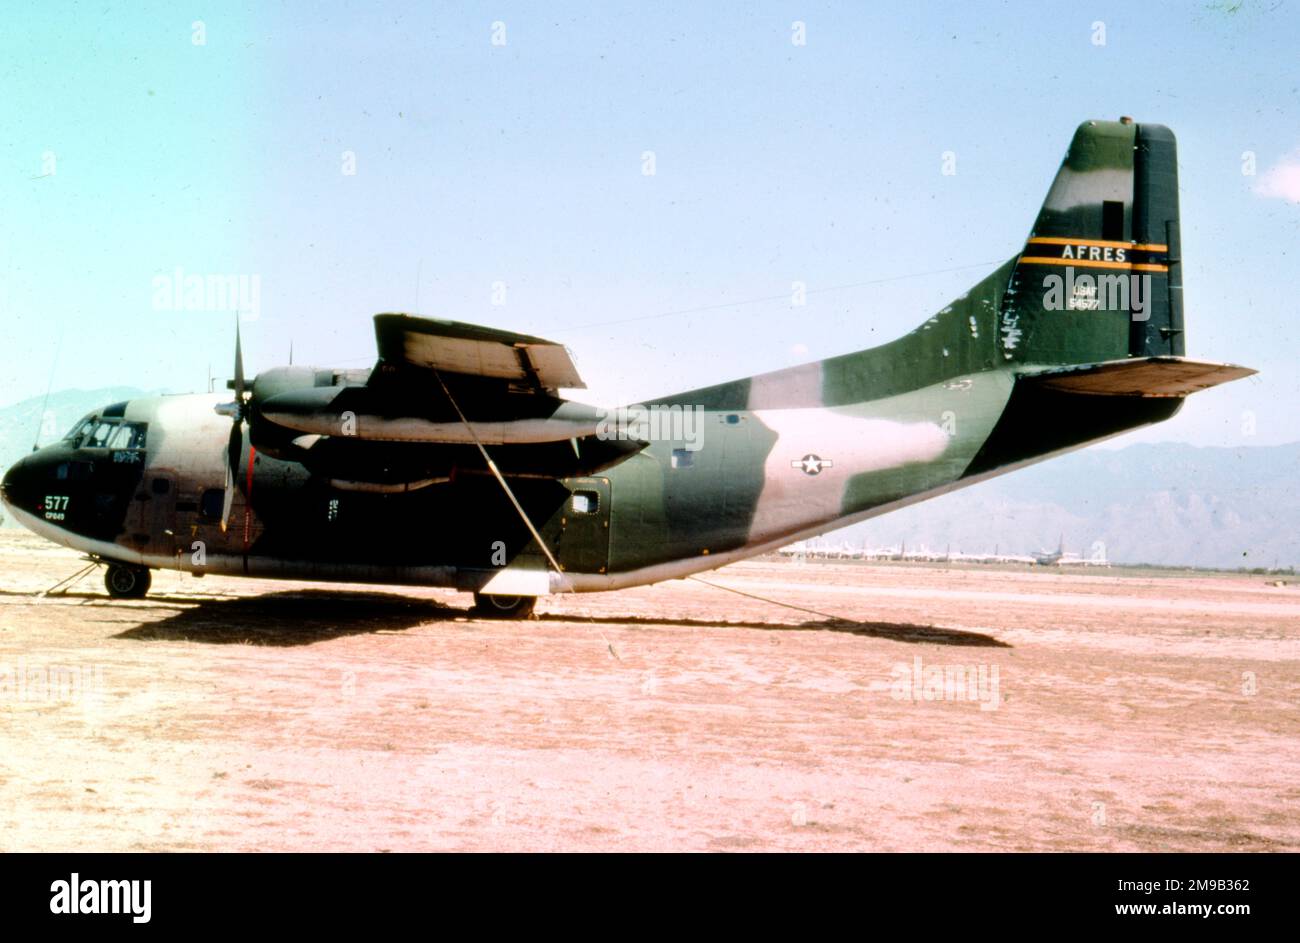 United States Air Force Reserve - Fairchild UC-123K-16-FA Provider 55-4577 (msn 20238), auf dem Luftwaffenstützpunkt Davis-Monthan zur Lagerung und Entsorgung, ca. 1985. Gebaut als C-123B-16-FA, wurde es in C-123K und später in UC-123K umgewandelt, für den Einsatz im „Ranch Hand“-Sprühmittel Orange Defoliant in Vietnam. Verschrottet am 6. April 2010. Stockfoto